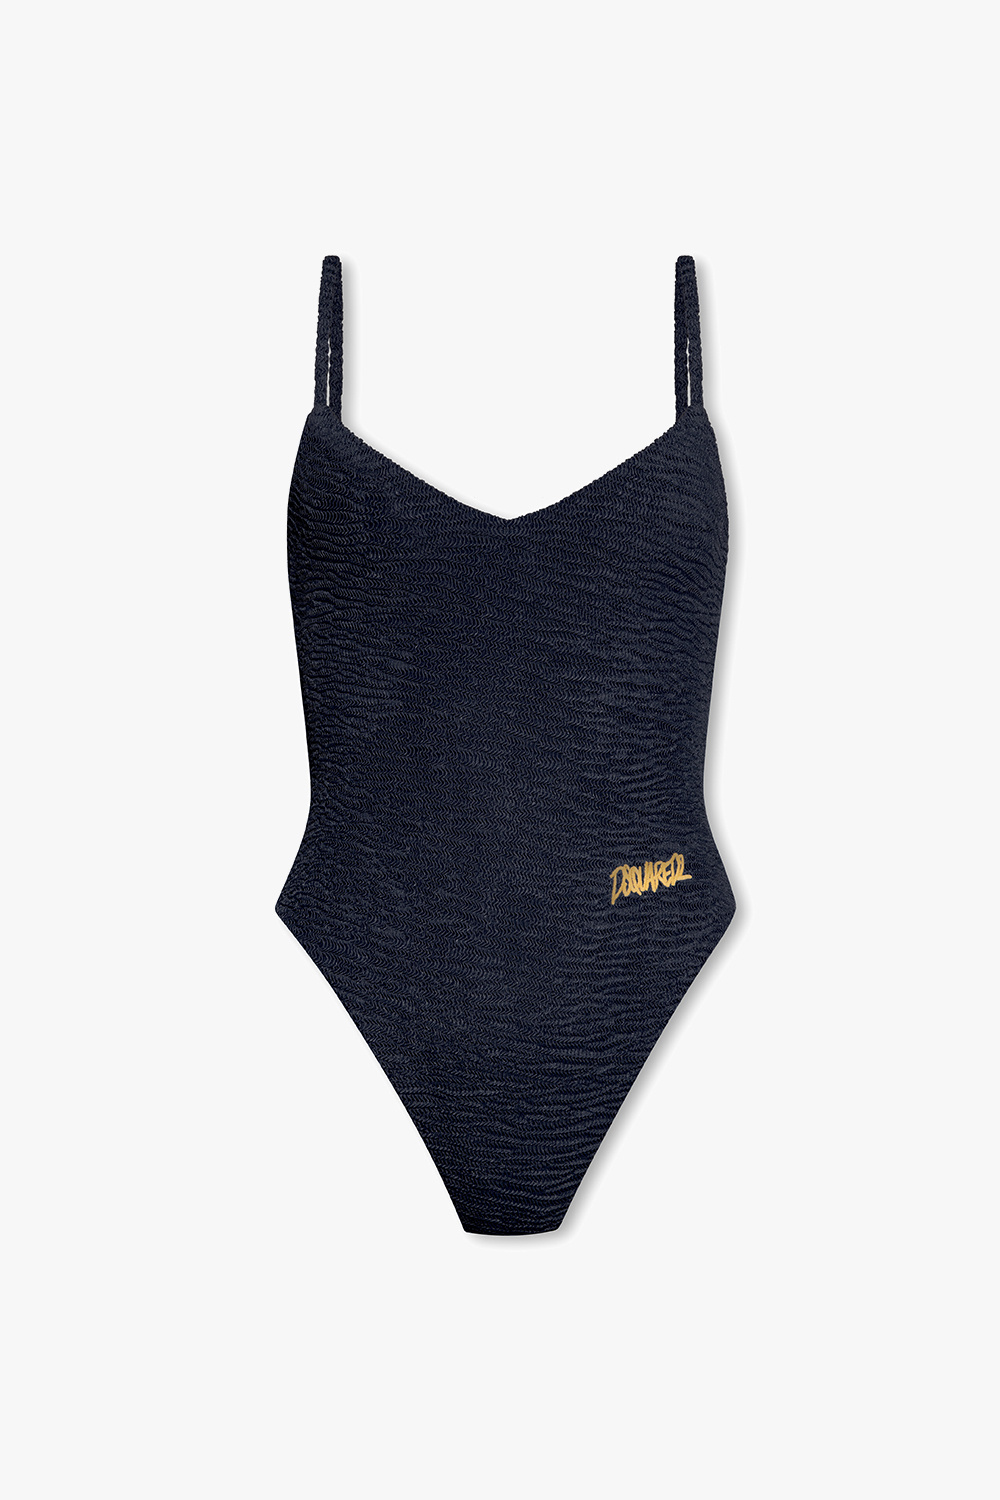 Louis Vuitton Lace Front One-Piece Swimsuit BLACK. Size 42